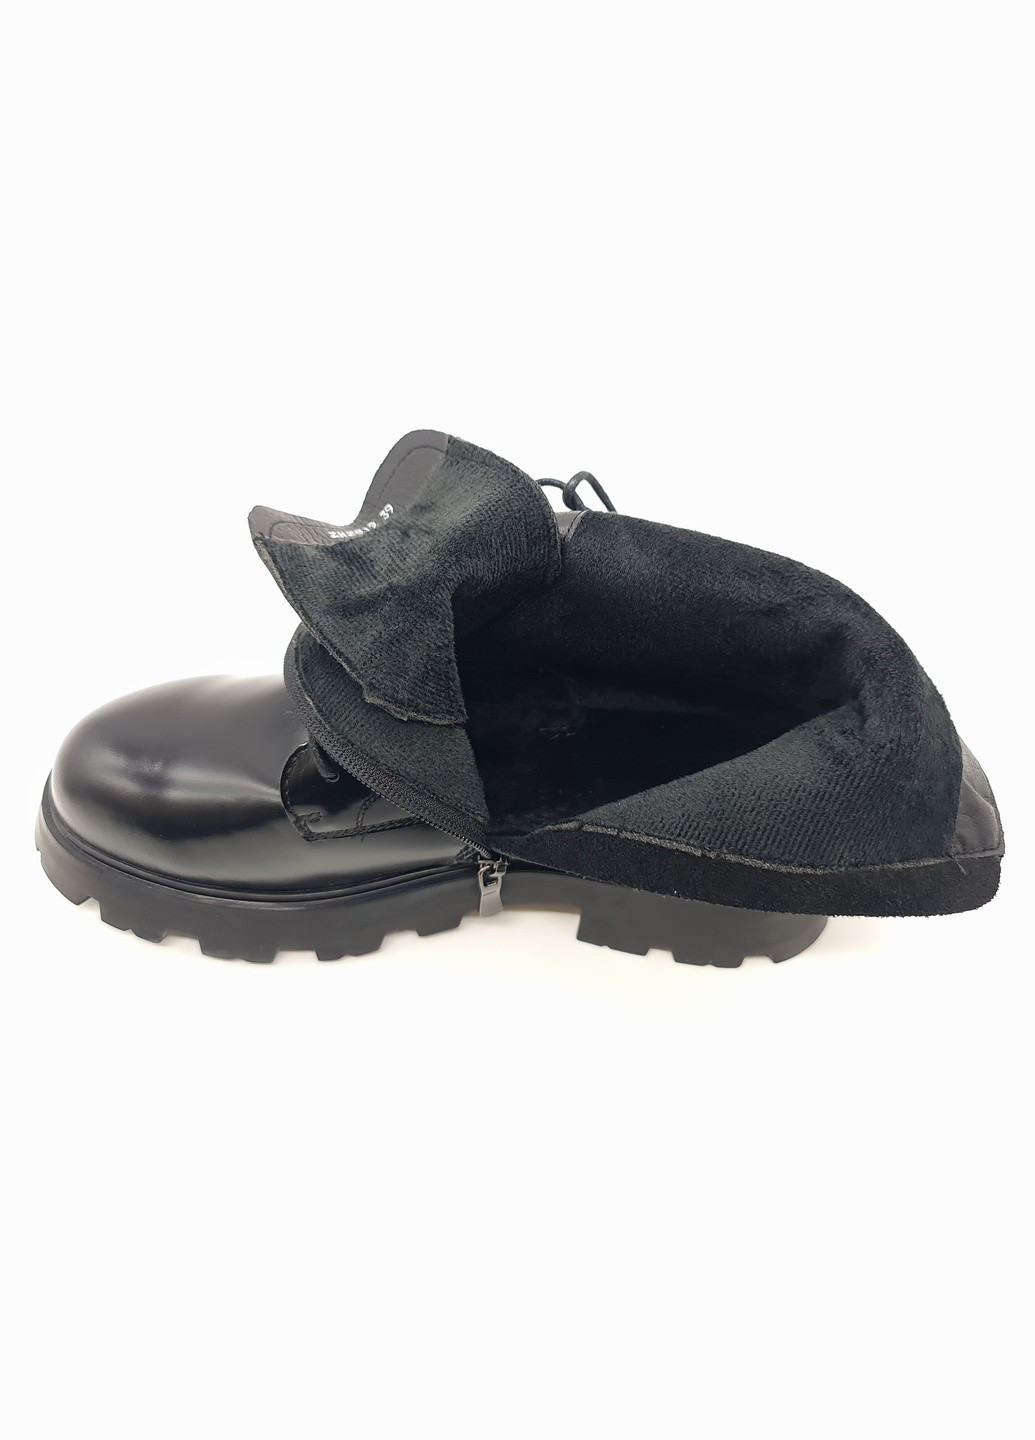 Жіночі черевики чорні шкіряні BV-13-10 24 см (р) Boss Victori (259299588)